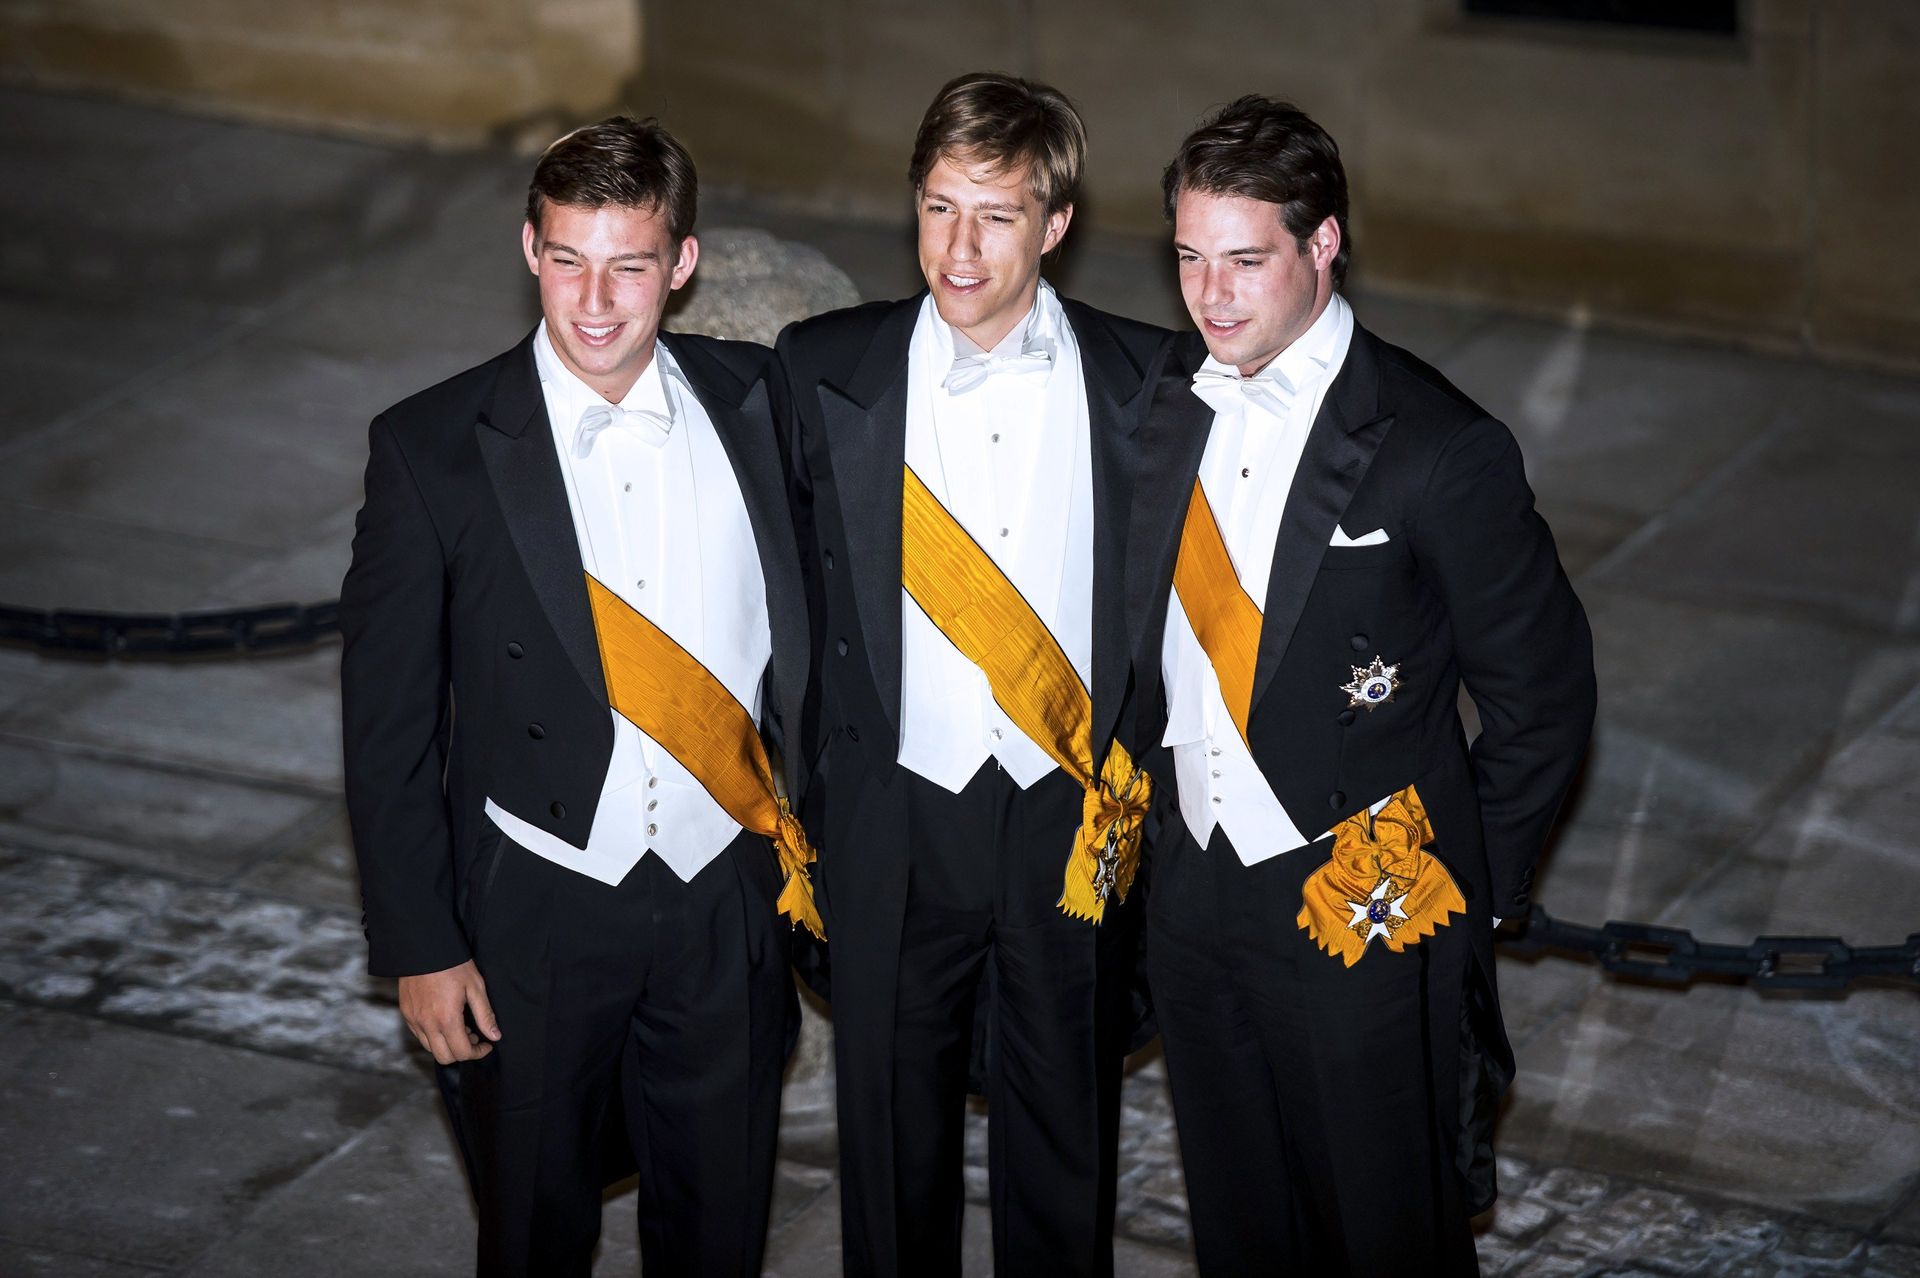 Prins Sébastien, prins Louis en prins Félix arriveren voor een galadiner op het Groothertogelijk